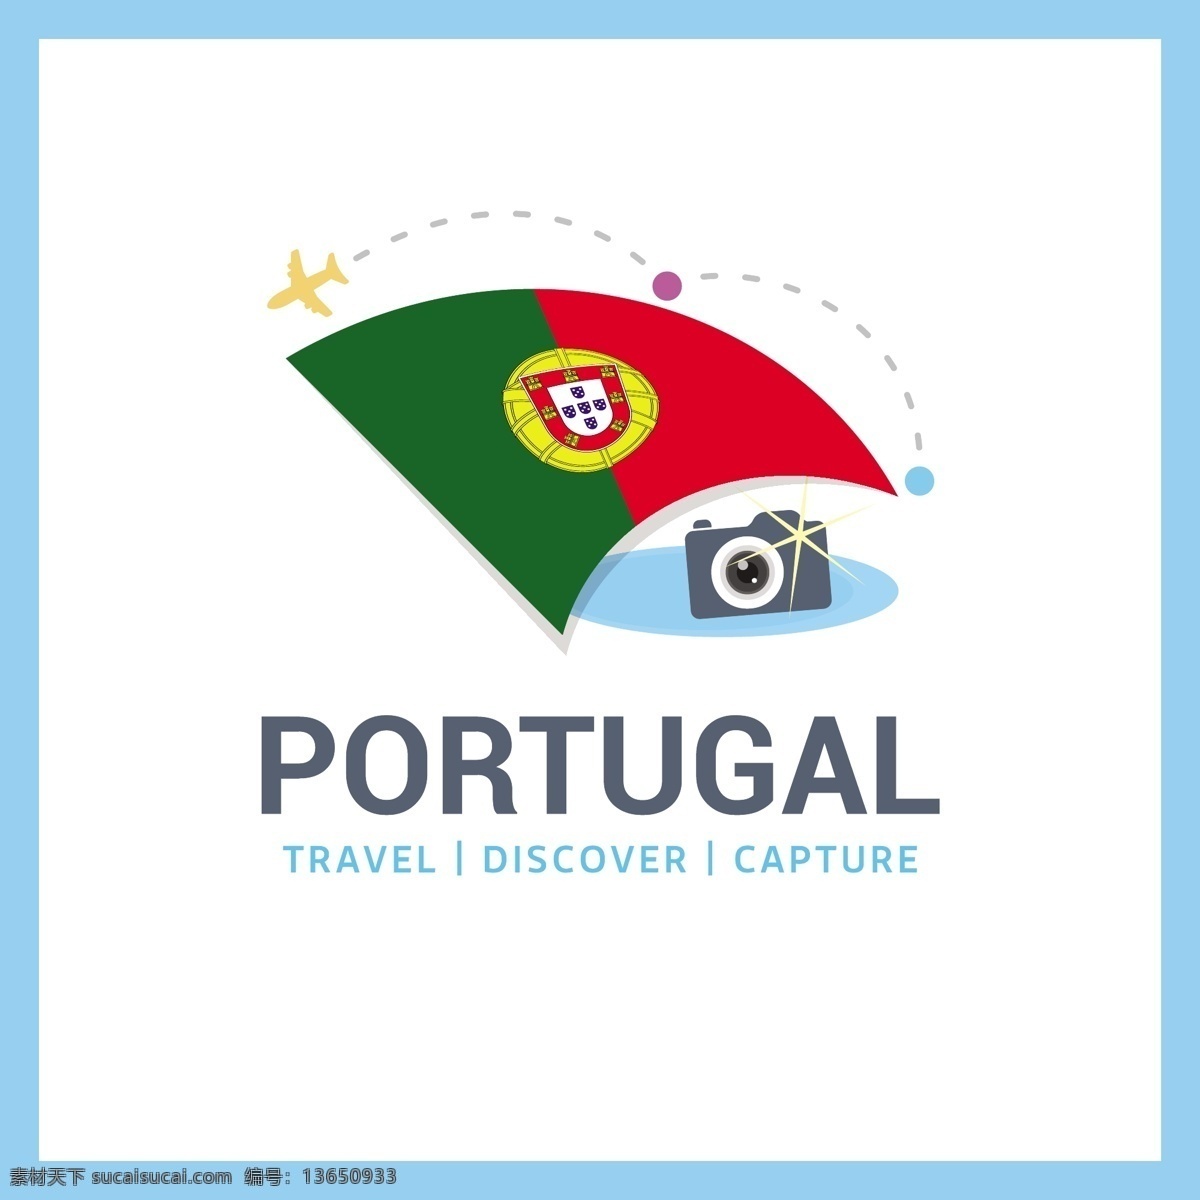 去葡萄牙旅行 背景 标志 标签 旅行 徽章 地图 世界国旗 国徽 旅游 度假 假期 行李 发现 在世界范围内 捕捉 公民